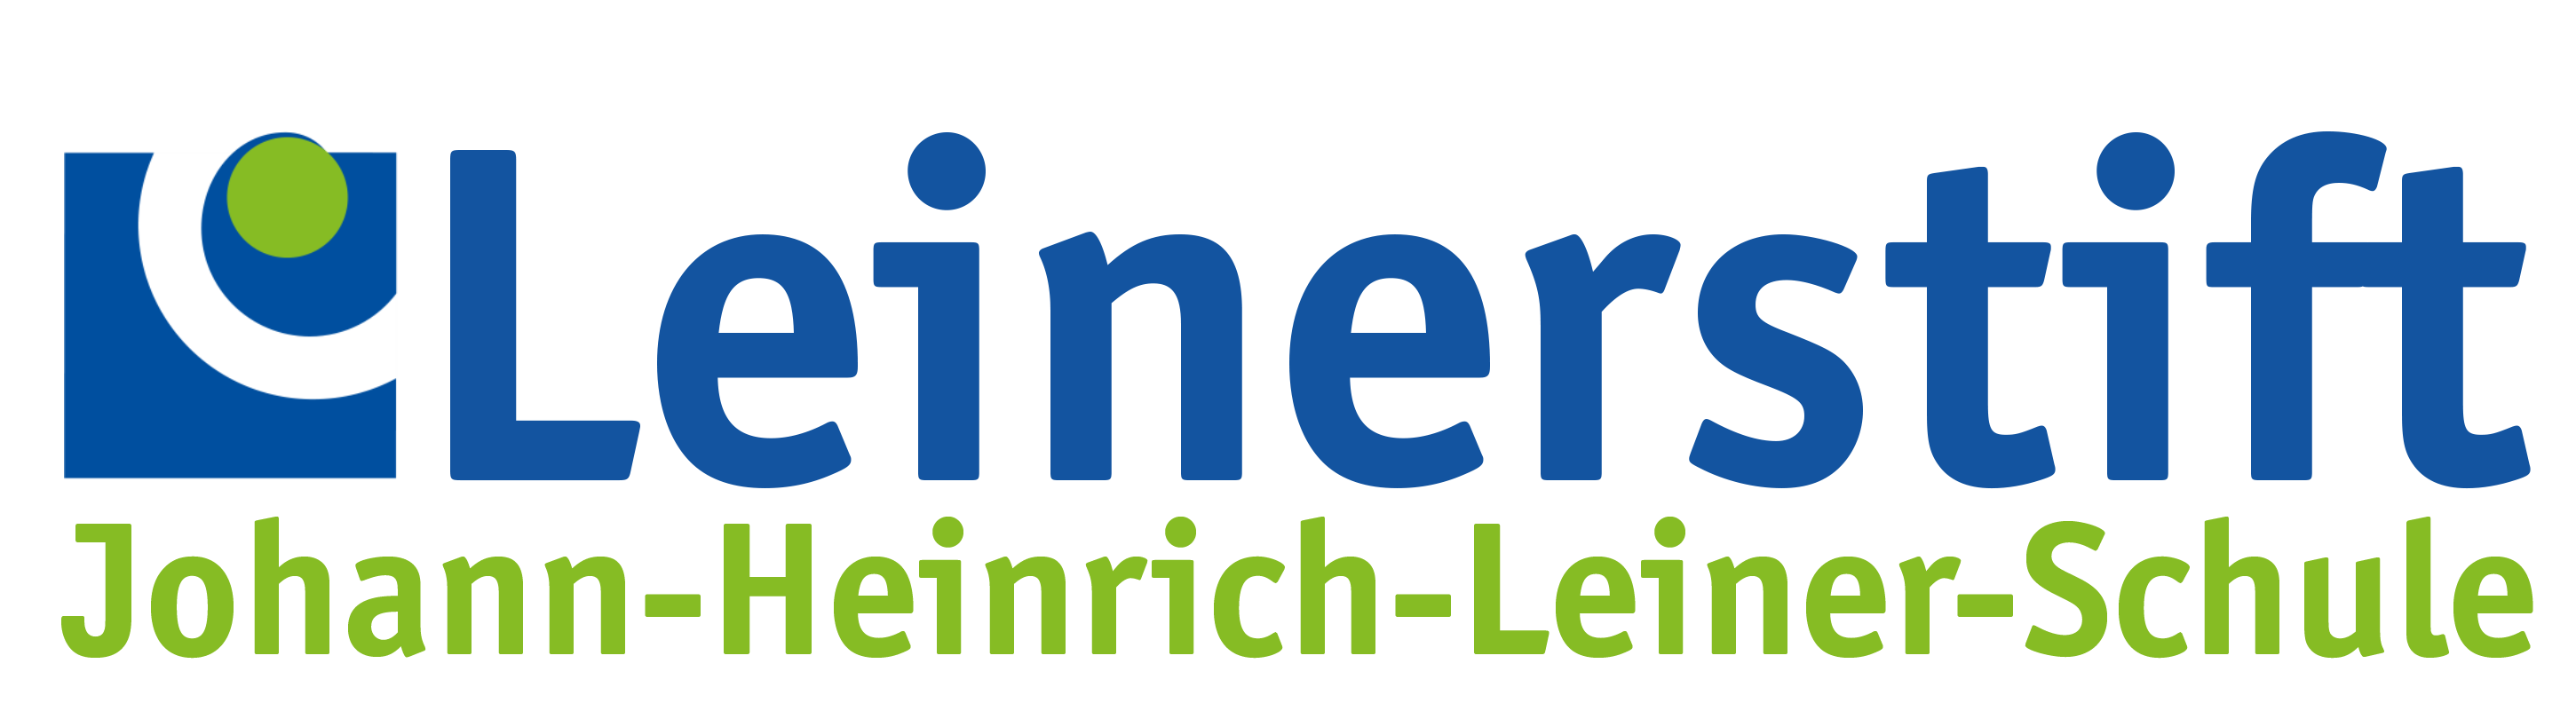 Johann-Heinrich-Leiner-Schule